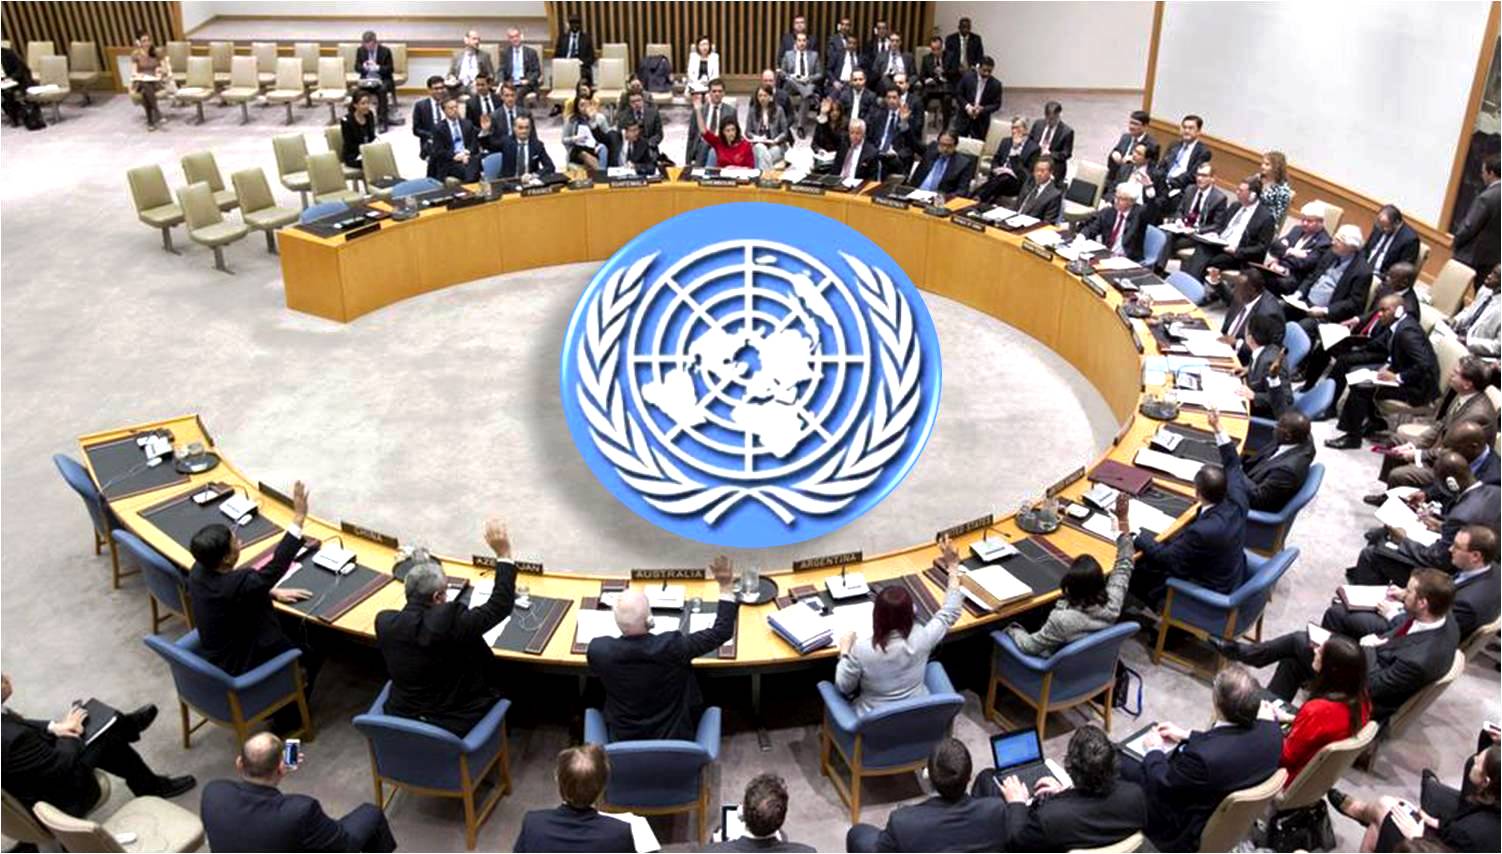 Е оон. Генеральная Ассамблея и совет безопасности ООН. Организация Объединенных наций (ООН). Международные организации совет безопасности ООН. Зал сб ООН.